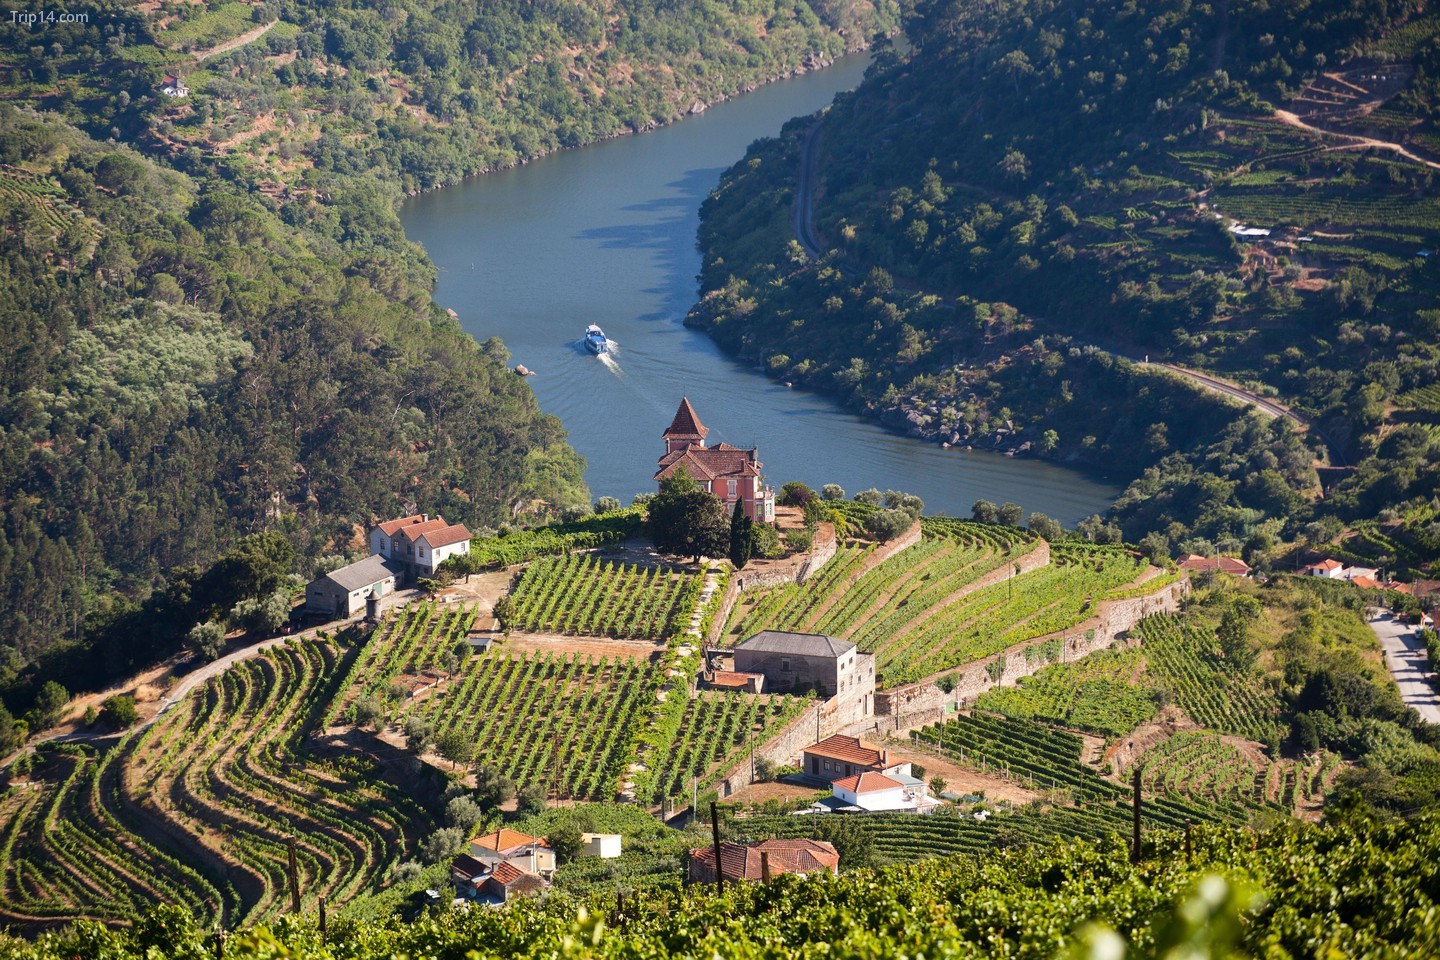 Đi bộ trên những con đường mòn ở Thung lũng Douro để khám phá phong cảnh